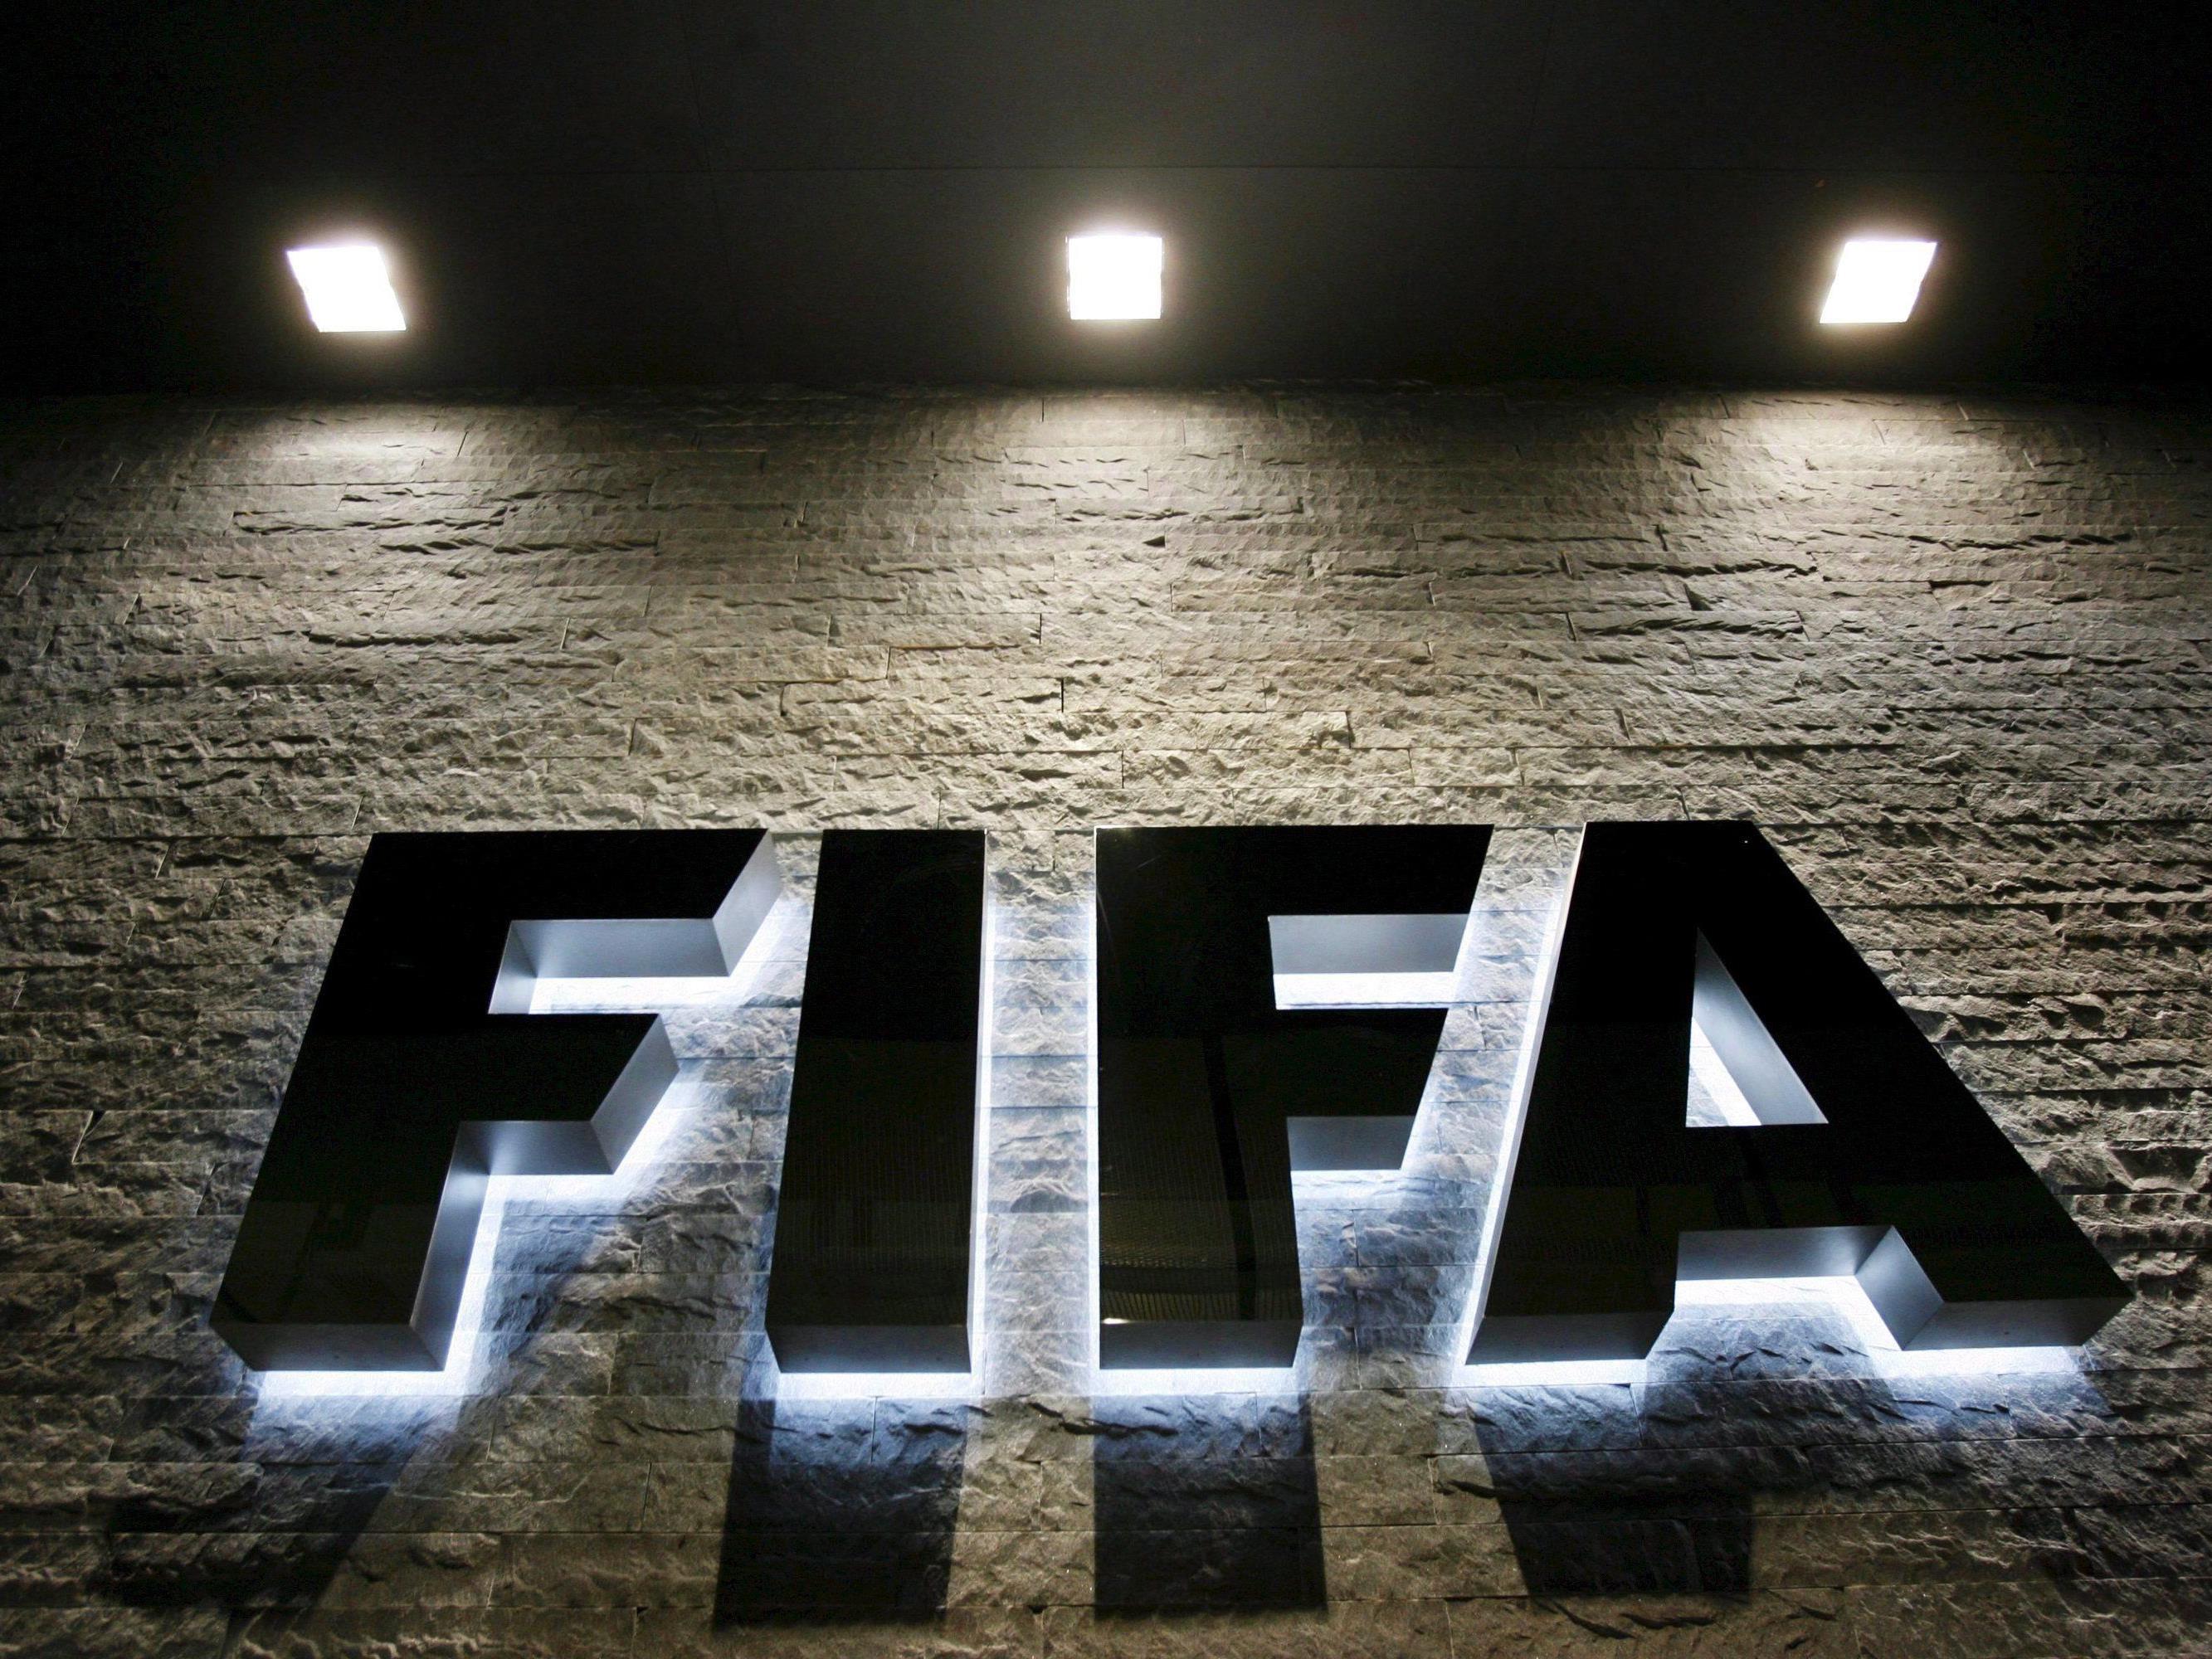 FIFA-Generalsekretär Valcke: "Bleiben noch sieben Jahre Zeit, um alles entsprechend zu organisieren".